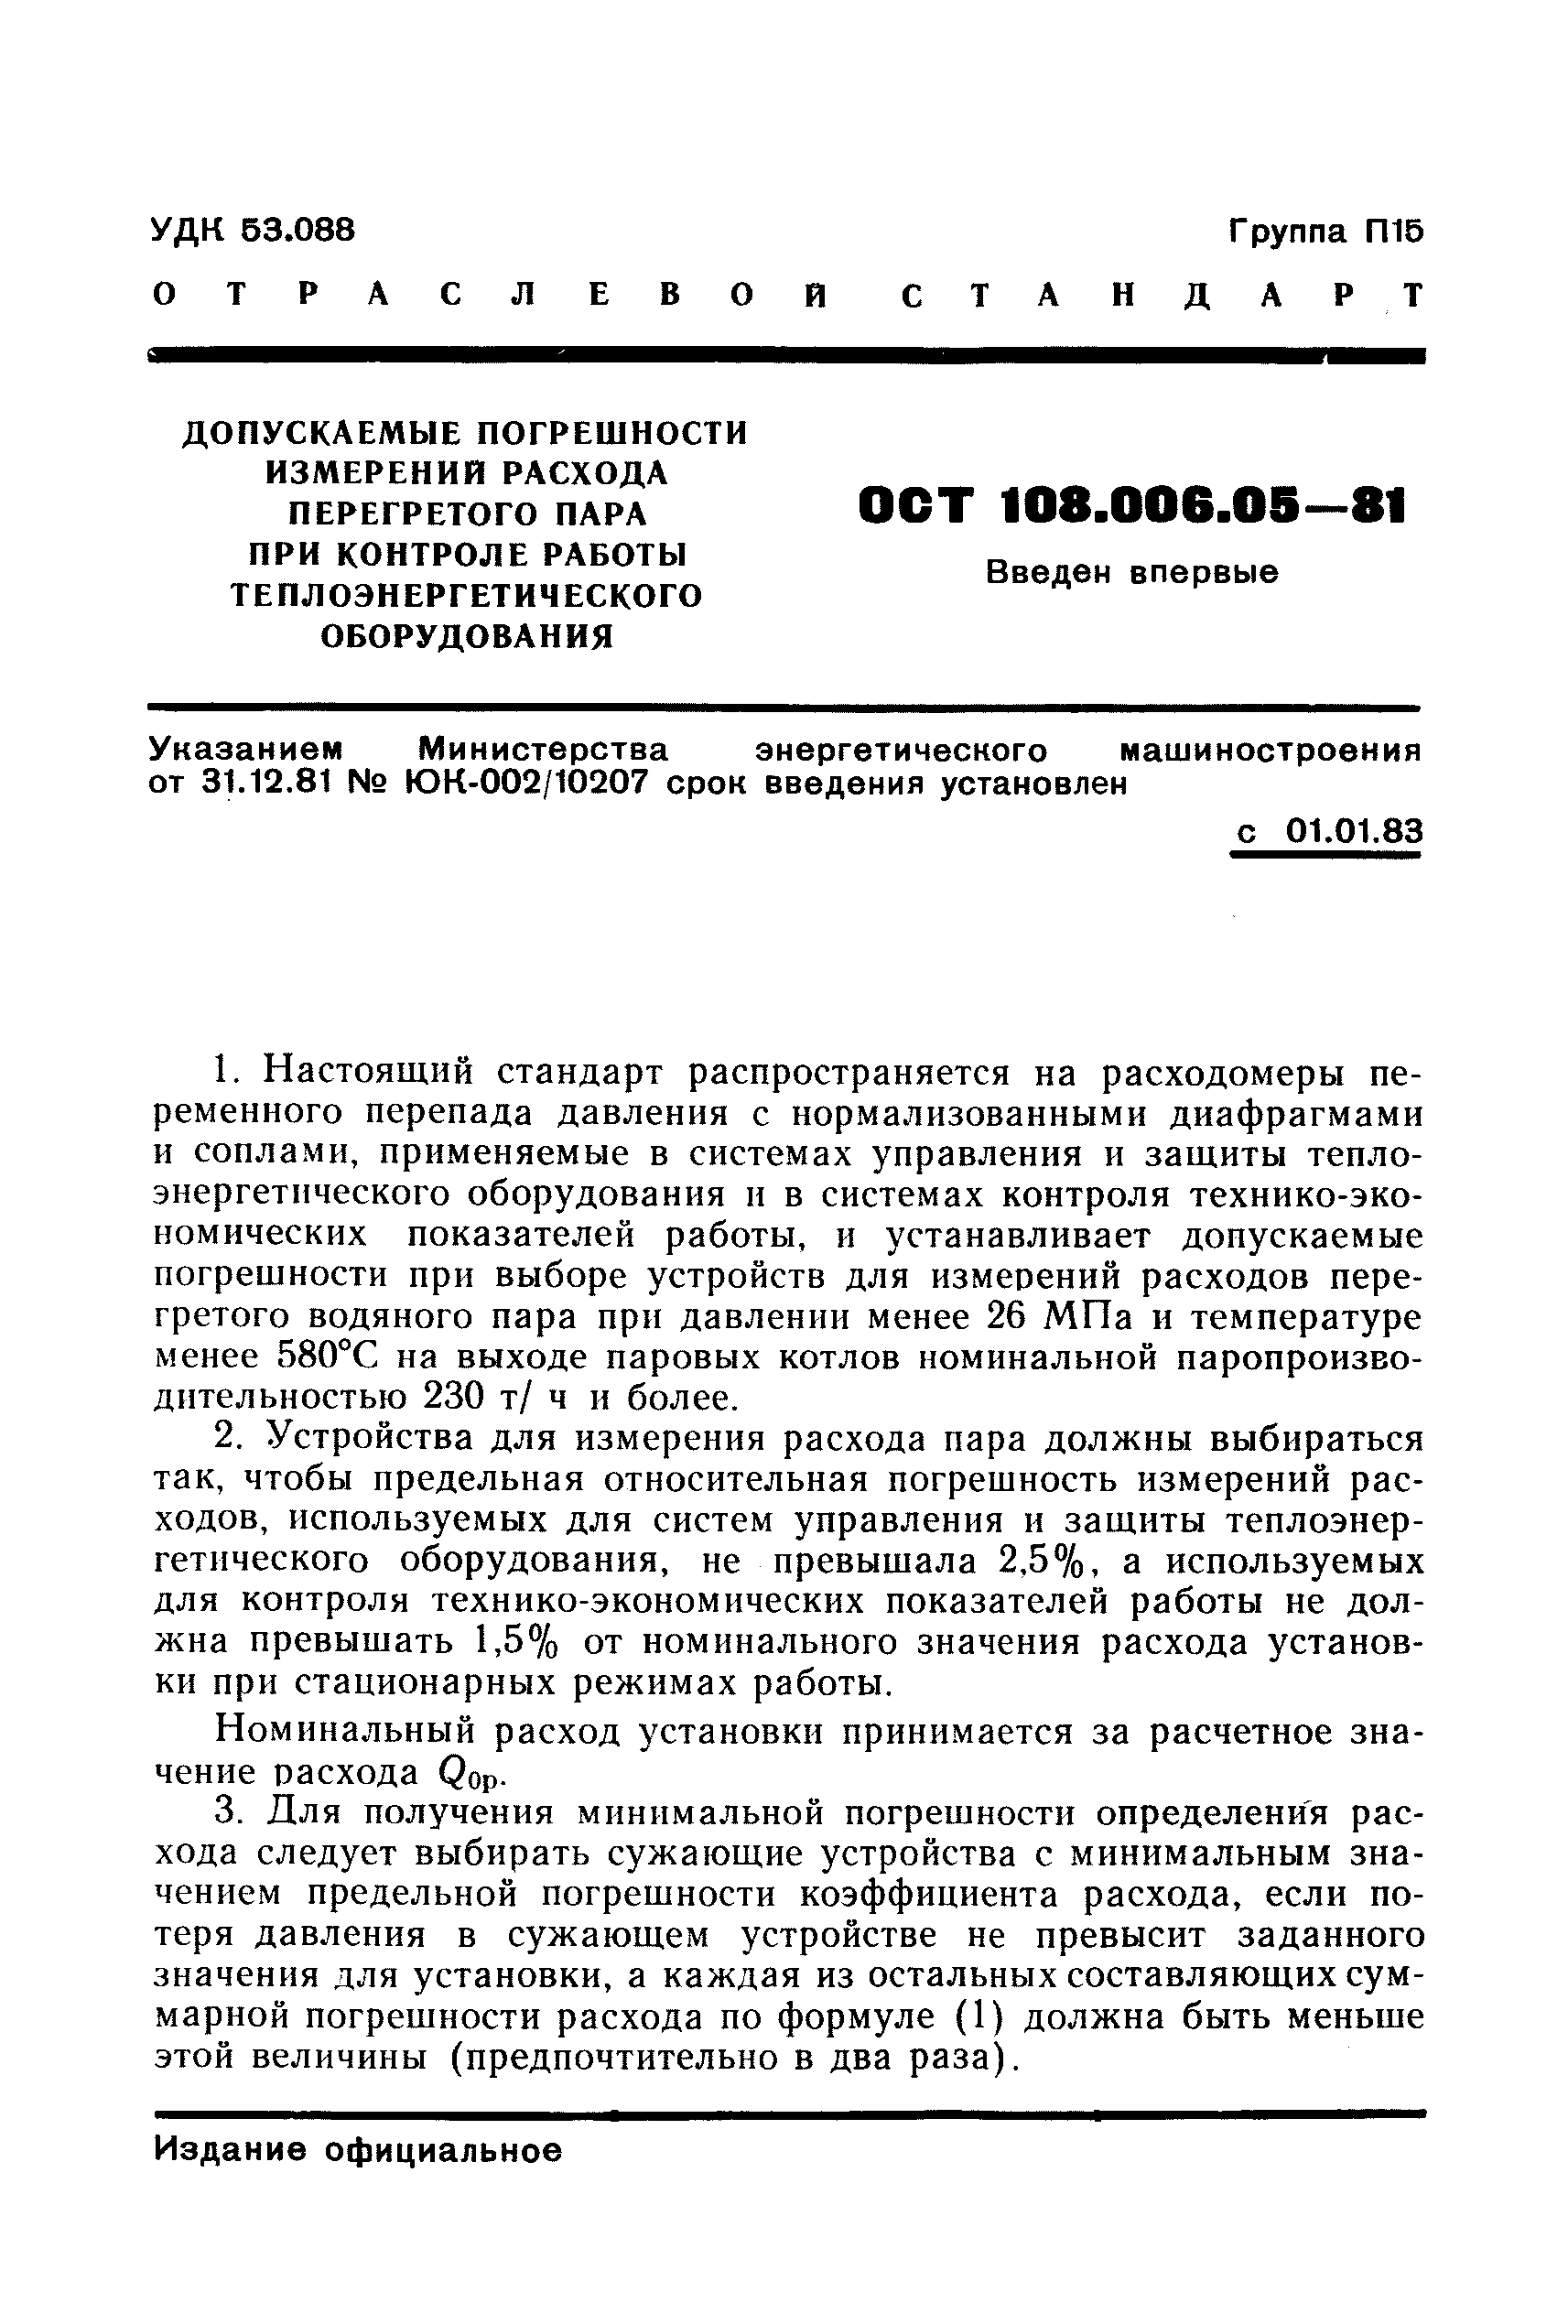 ОСТ 108.006.05-81